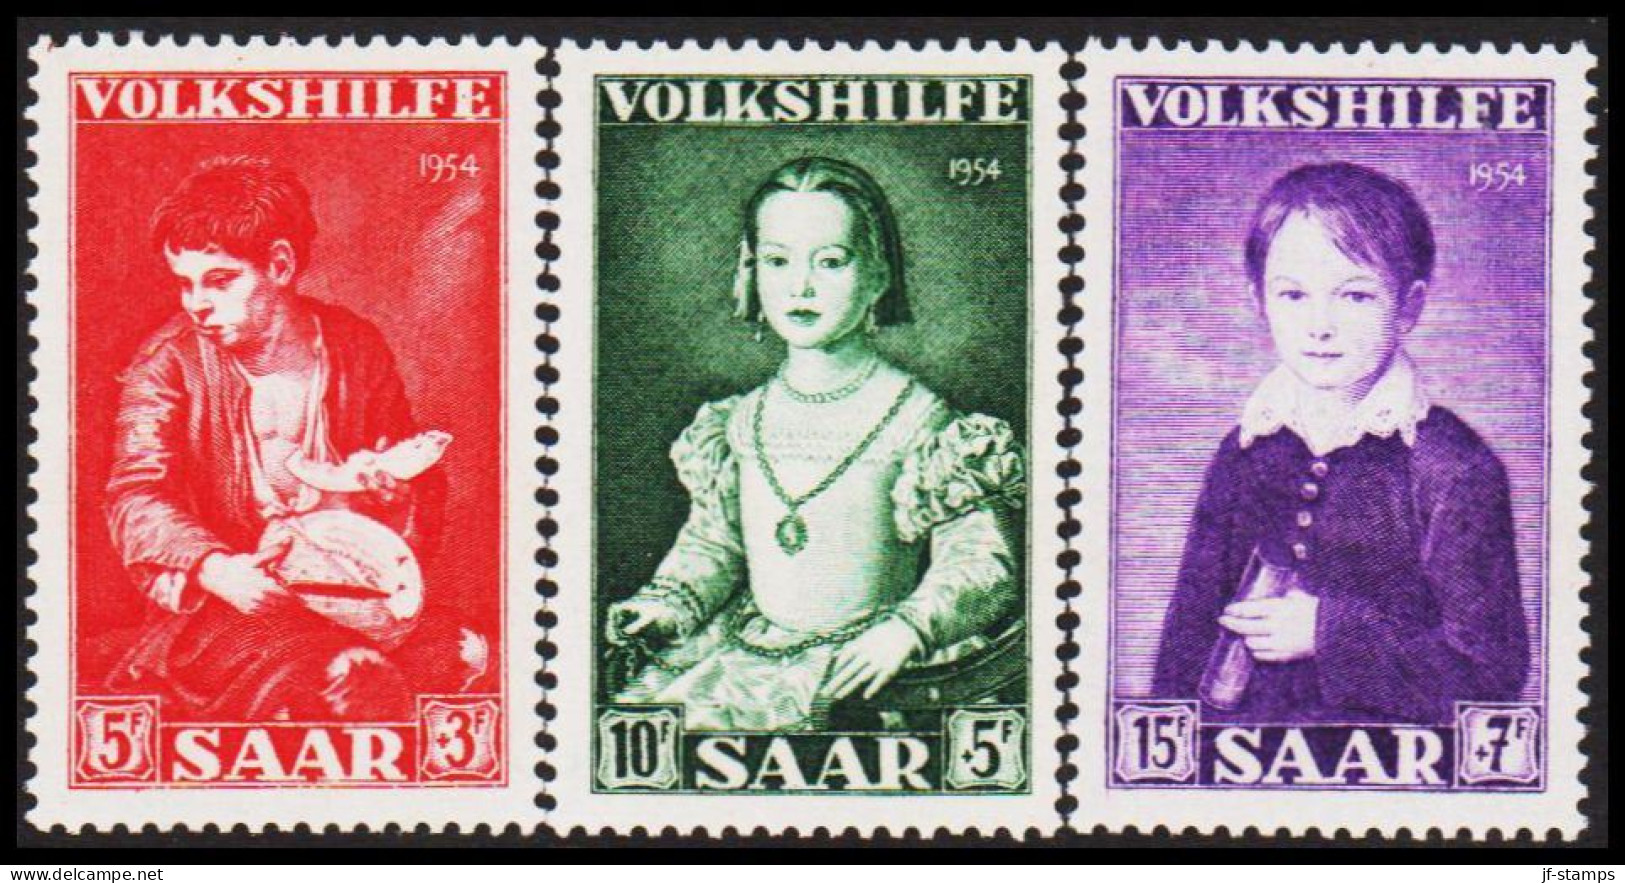 1954. SAAR. VOLKSHILFE.  Complete Set. NEVER Hinged. Beautiful Set.  (Michel 354-356) - JF544478 - Unused Stamps